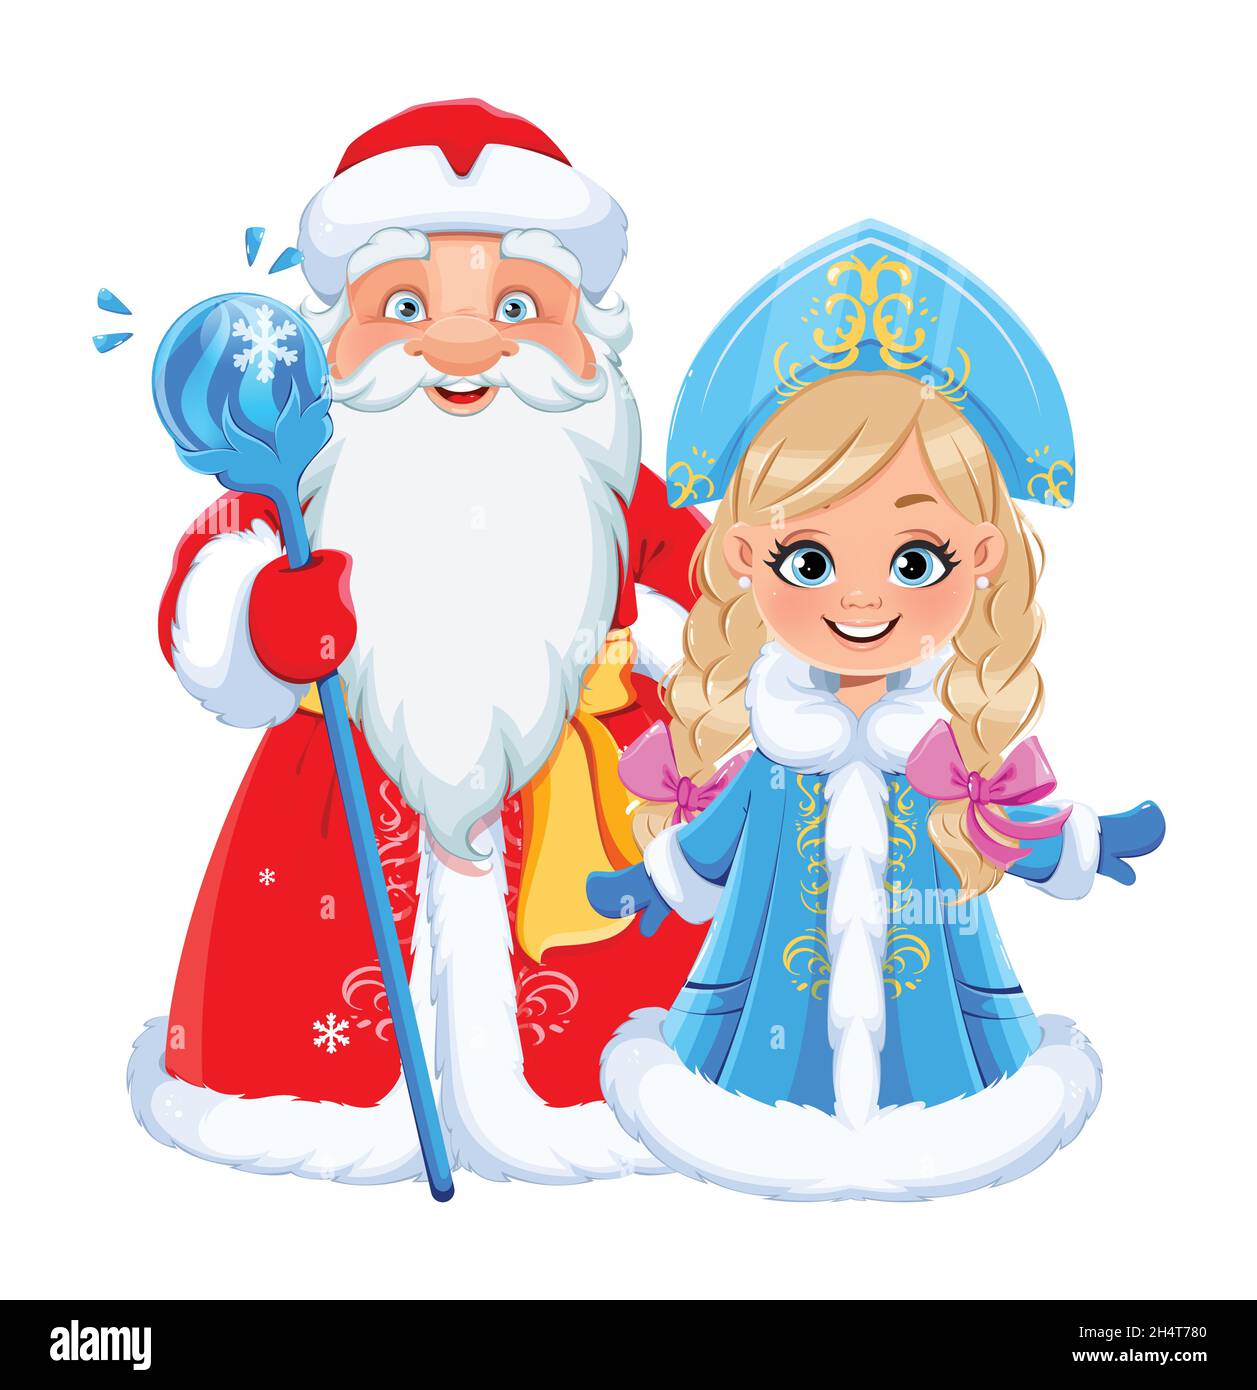 Frohes neues Jahr und Frohe Weihnachten. Der russische Vater Frost (Weihnachtsmann) und Snegurochka (Schneewittchen). Niedliche Comic-Figuren für den Urlaub. Lagerhaltung Stock Vektor